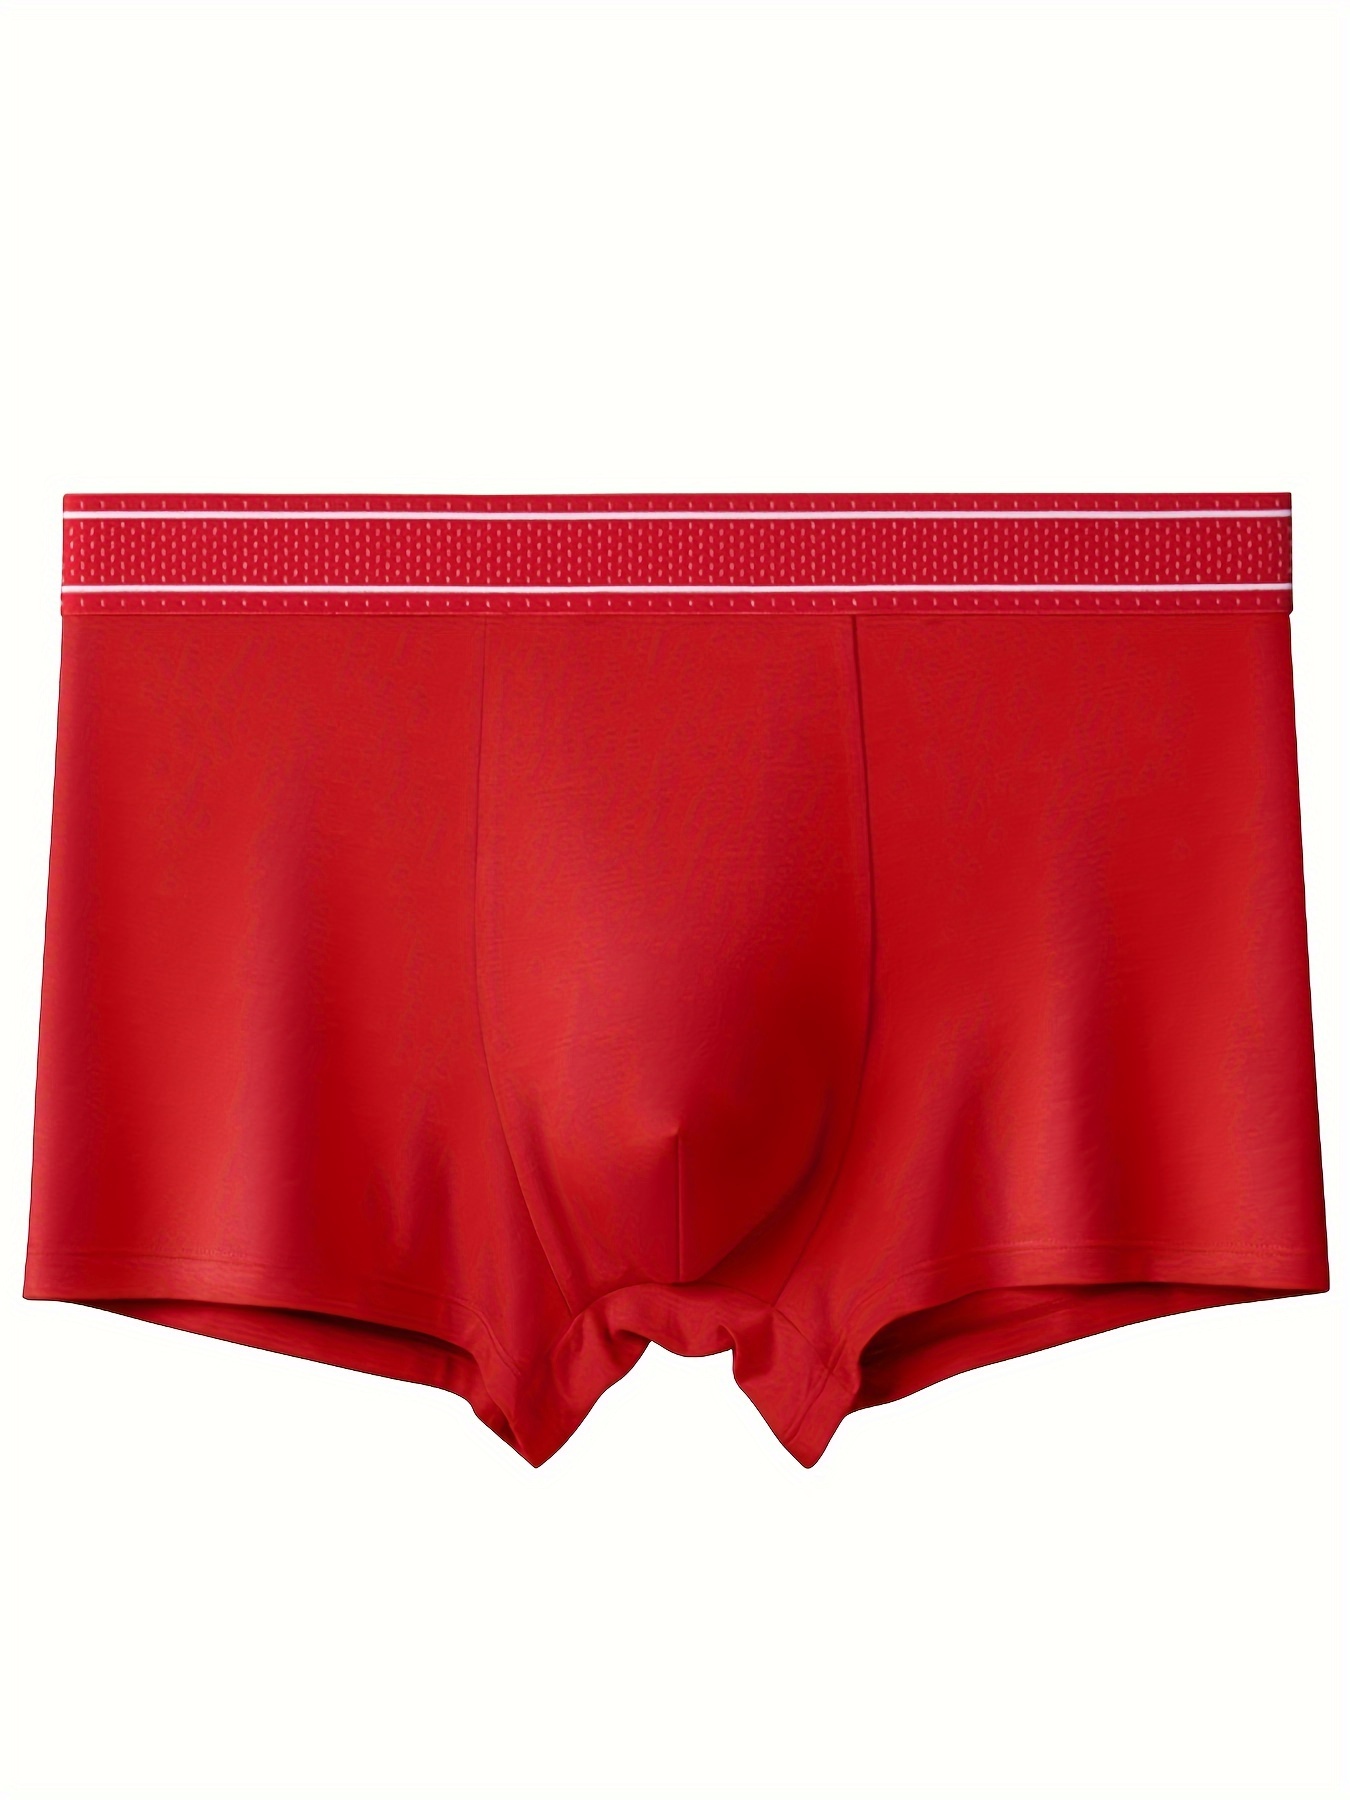 Men Boxer-Briefs Comfortable Underpants Sports Boxer-Briefs High Waist  Underpants 